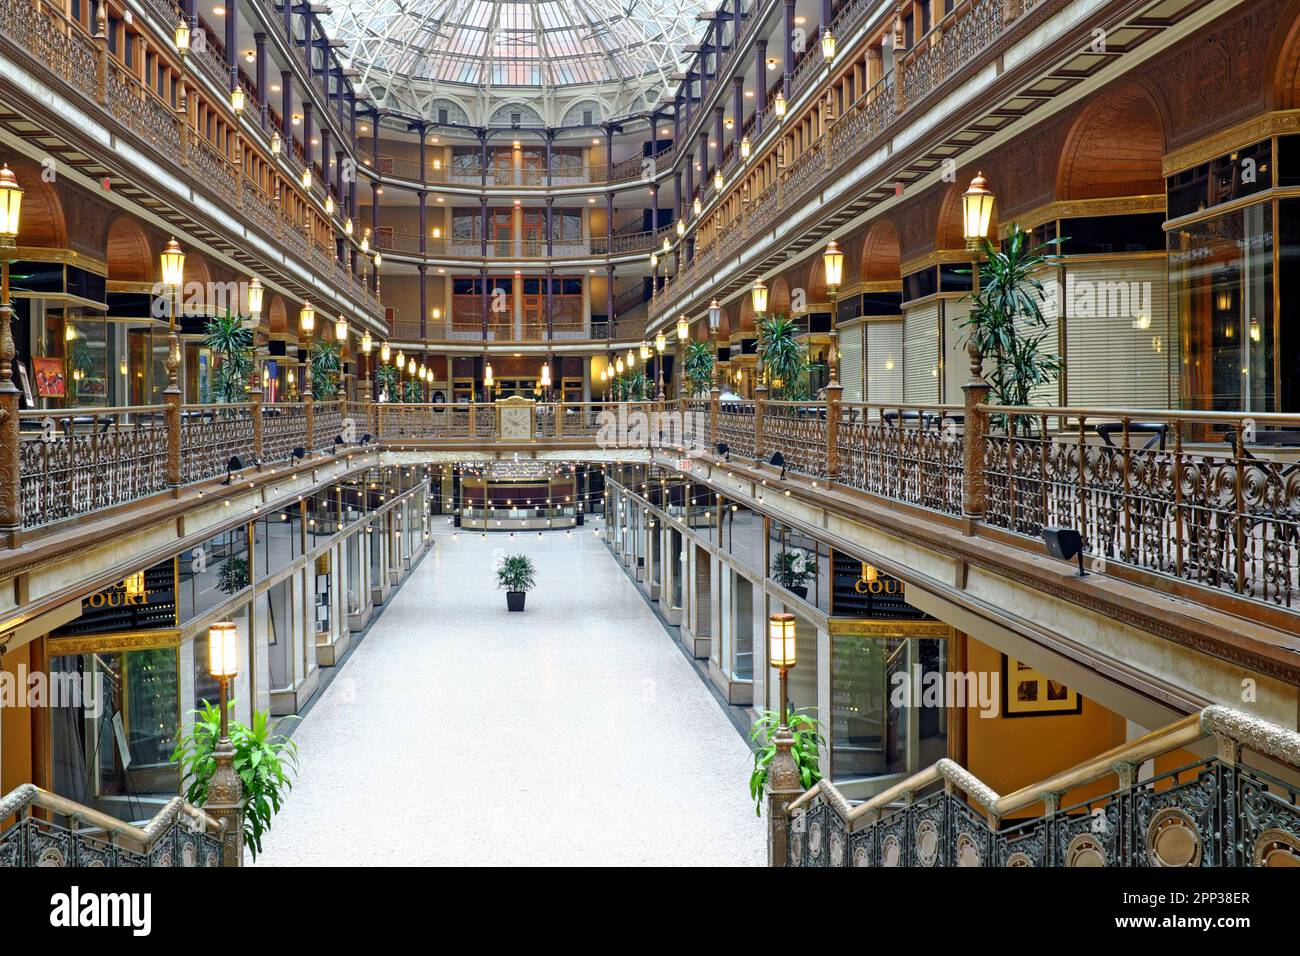 El Cleveland Arcade, inaugurado en 1890, es un monumento histórico conocido por su arquitectura de la época victoriana, tragaluz de cristal de 300 pies y sala de juegos de 5 pisos. Foto de stock